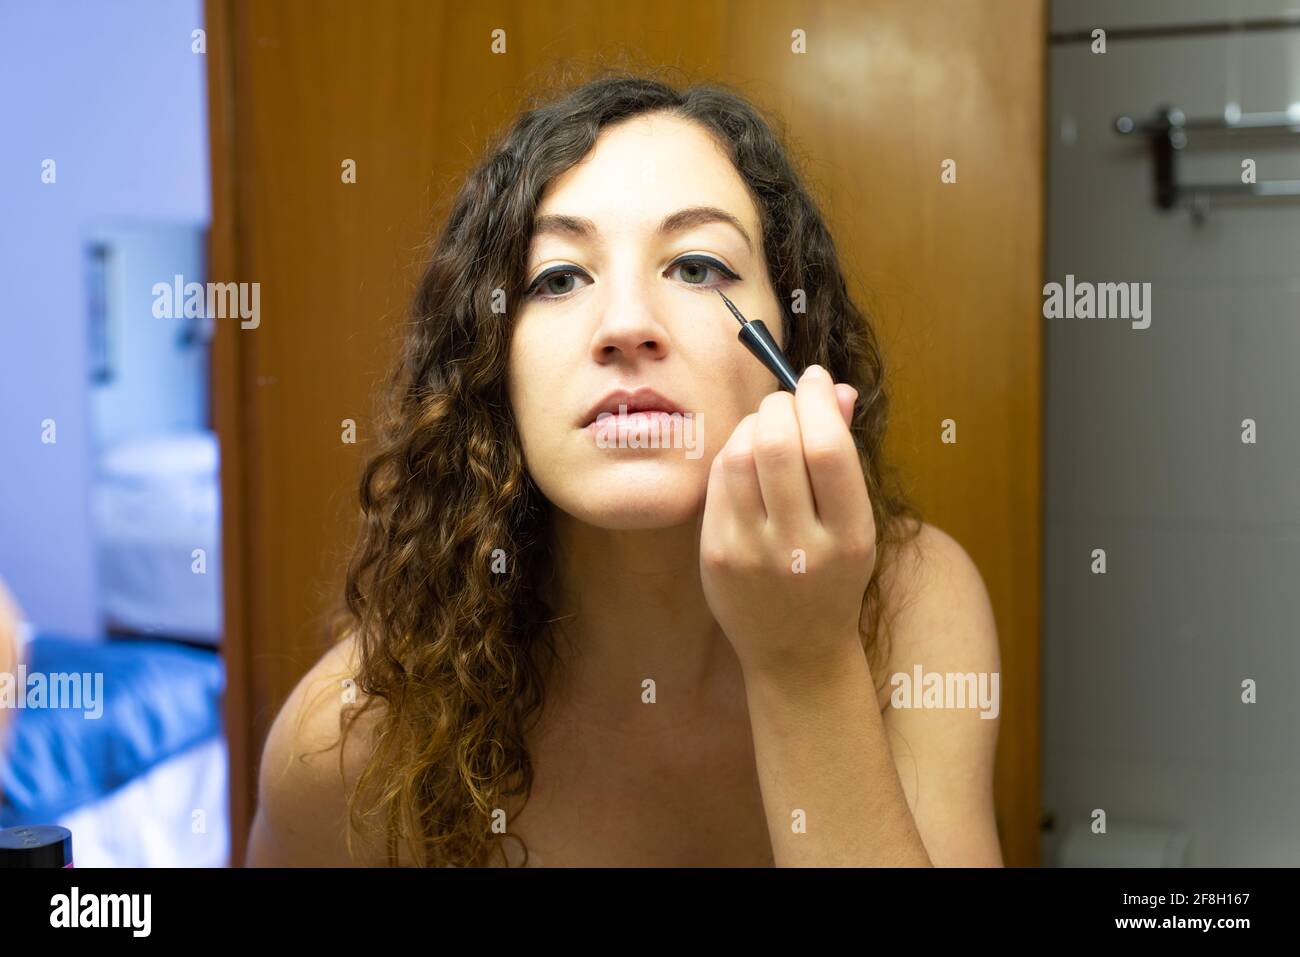 Junge Frau, die sich vor einem Spiegel schminkt. Nahaufnahme mit Augenlinse, Zeichnung der Augenlinie. Stockfoto